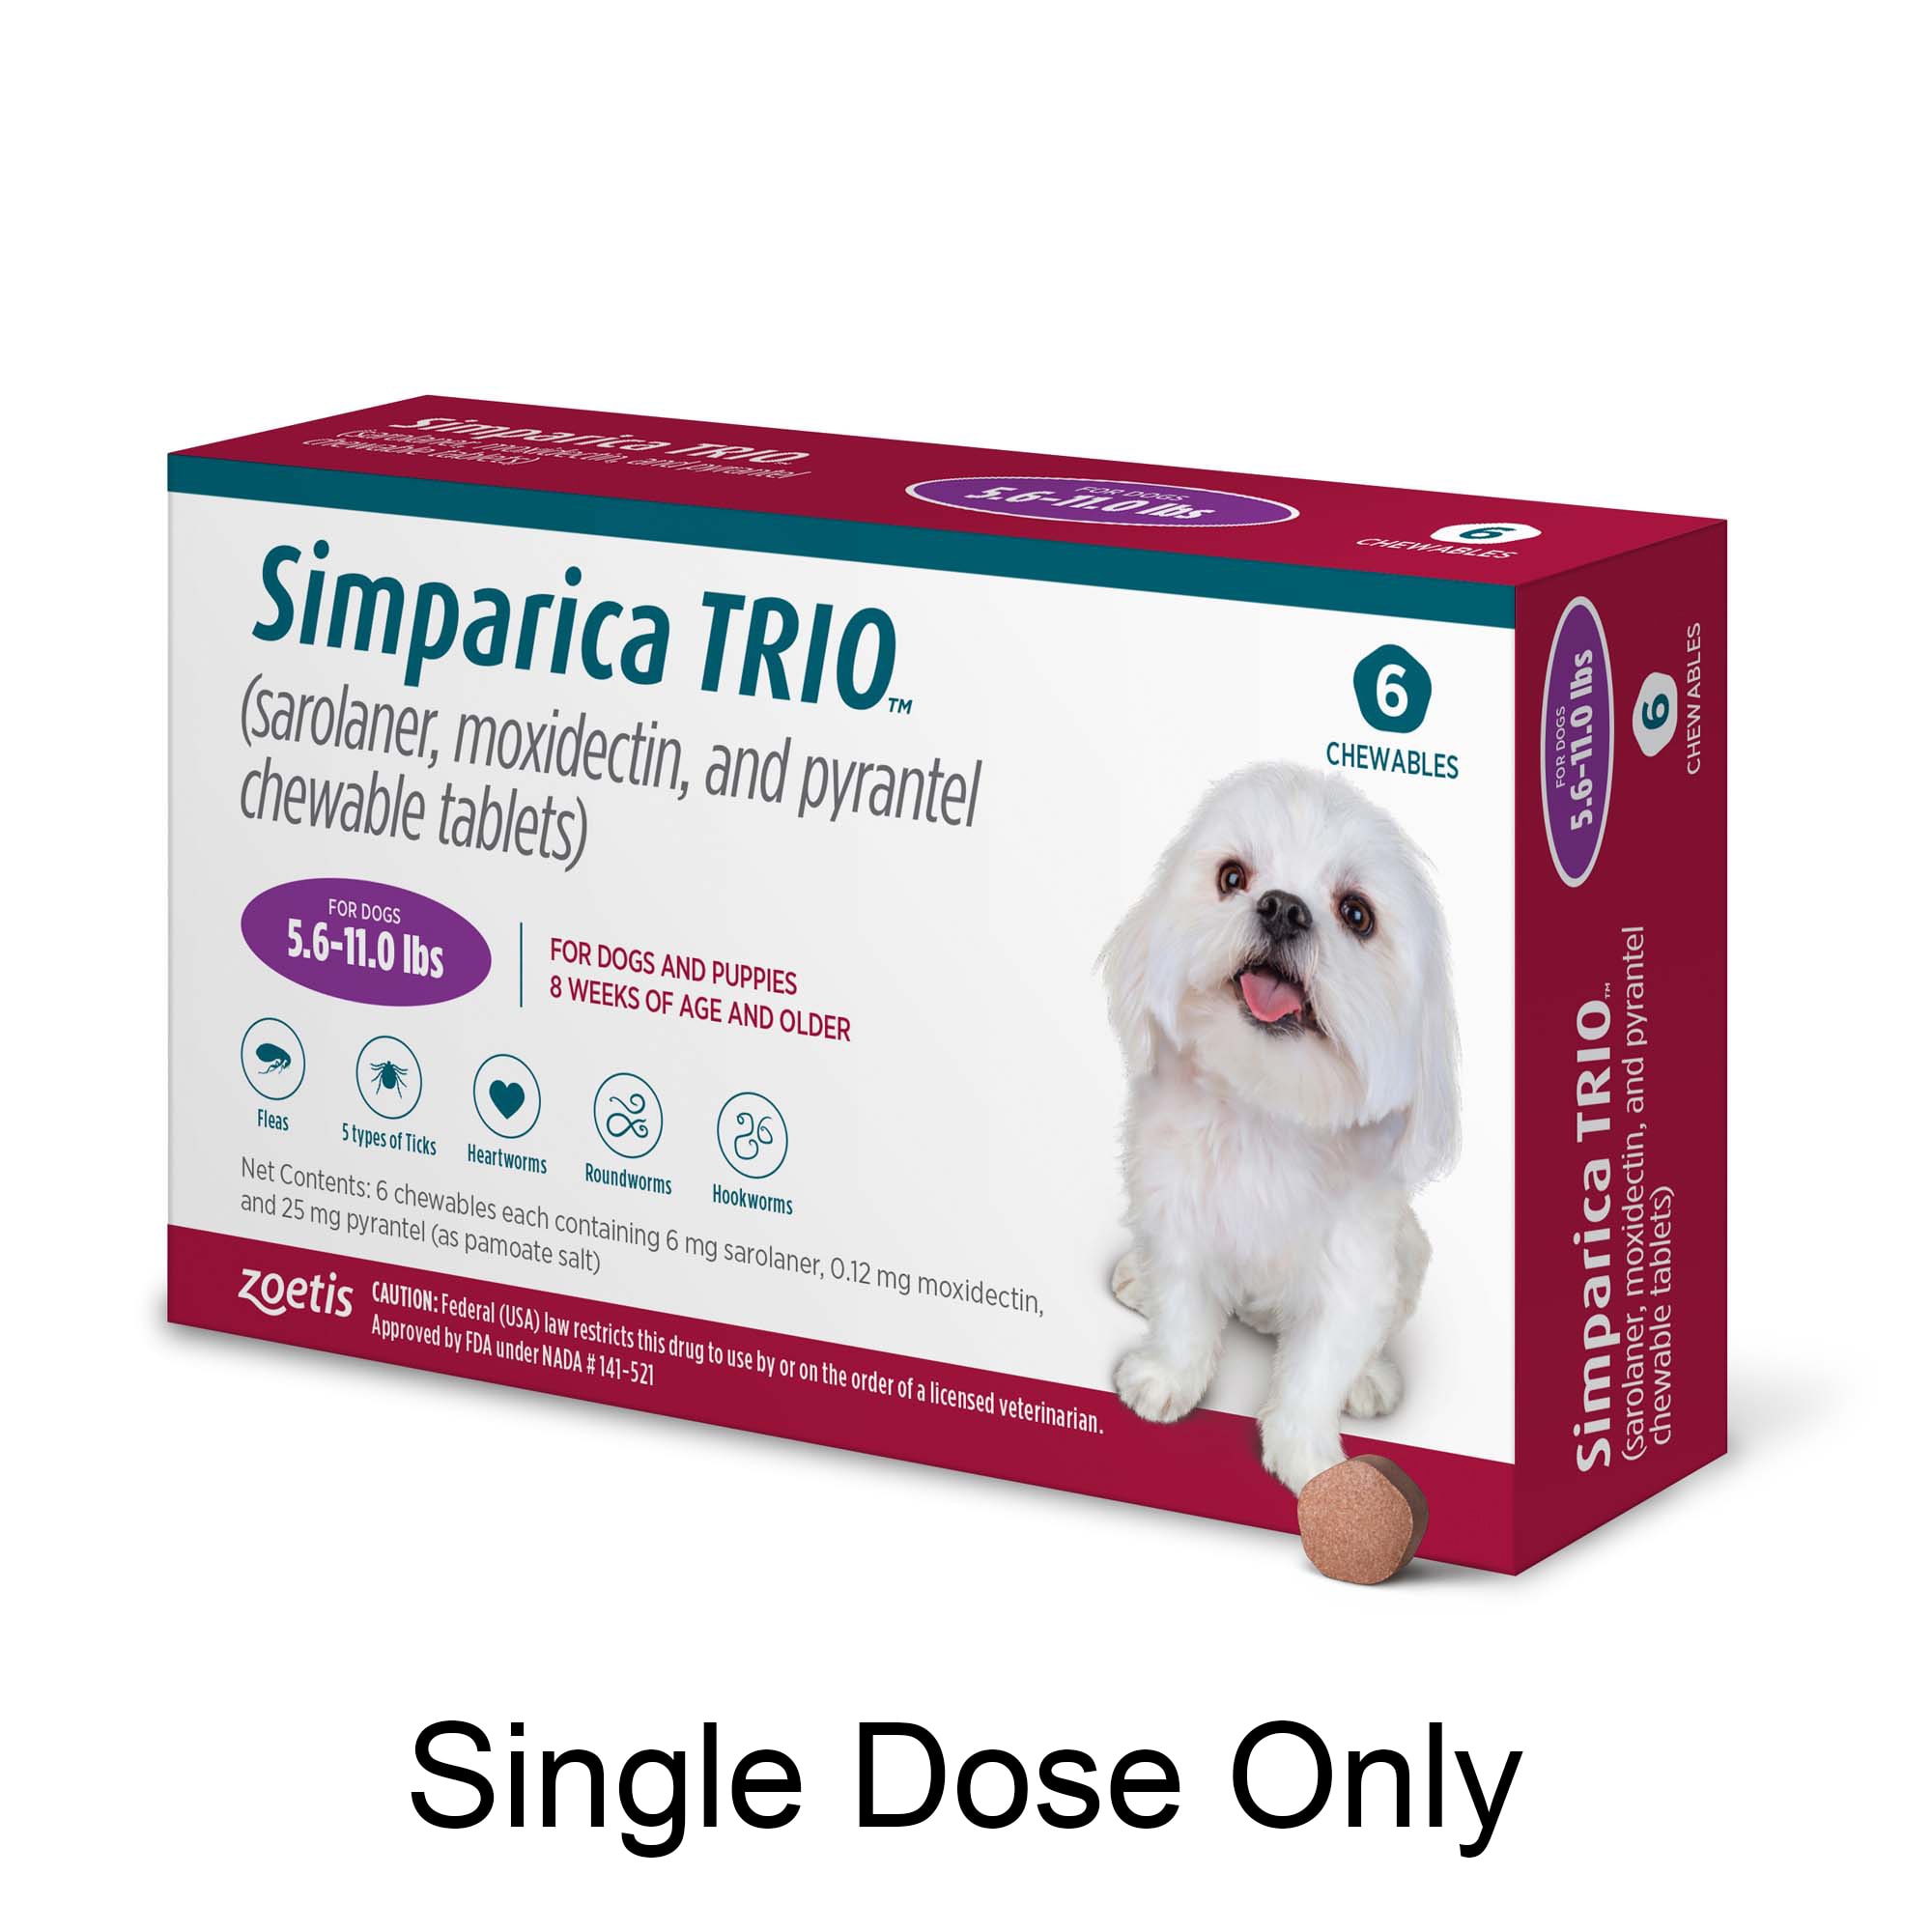 Simparica Trio Dogs, Month Supply Petco | tunersread.com